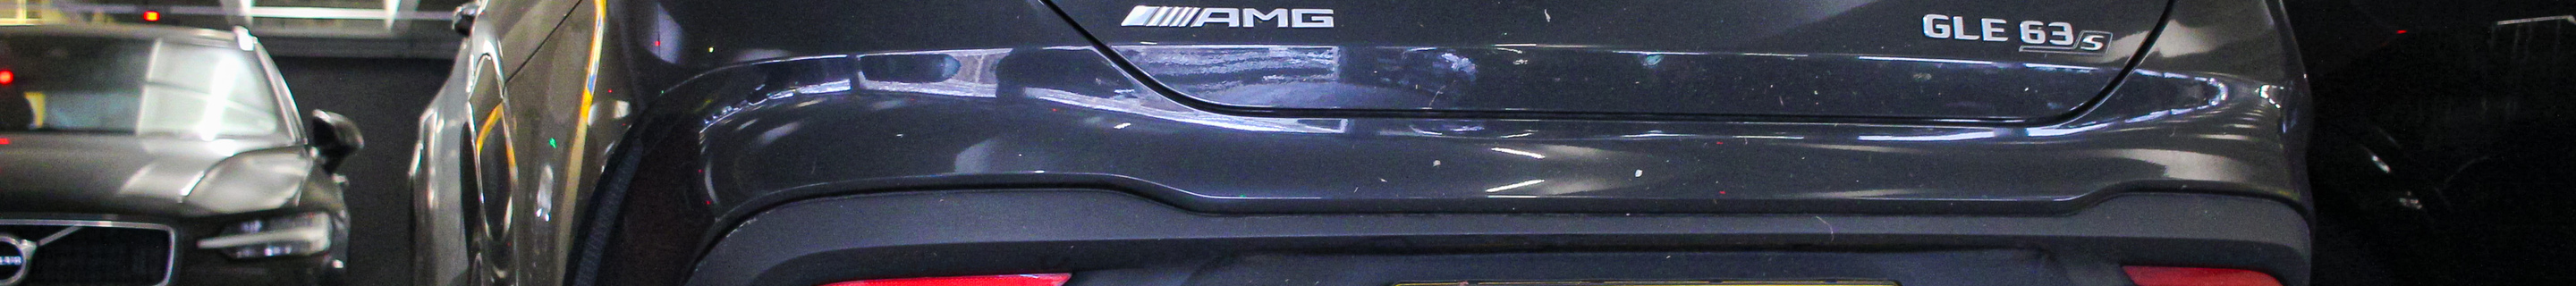 Mercedes-AMG GLE 63 S Coupé C167